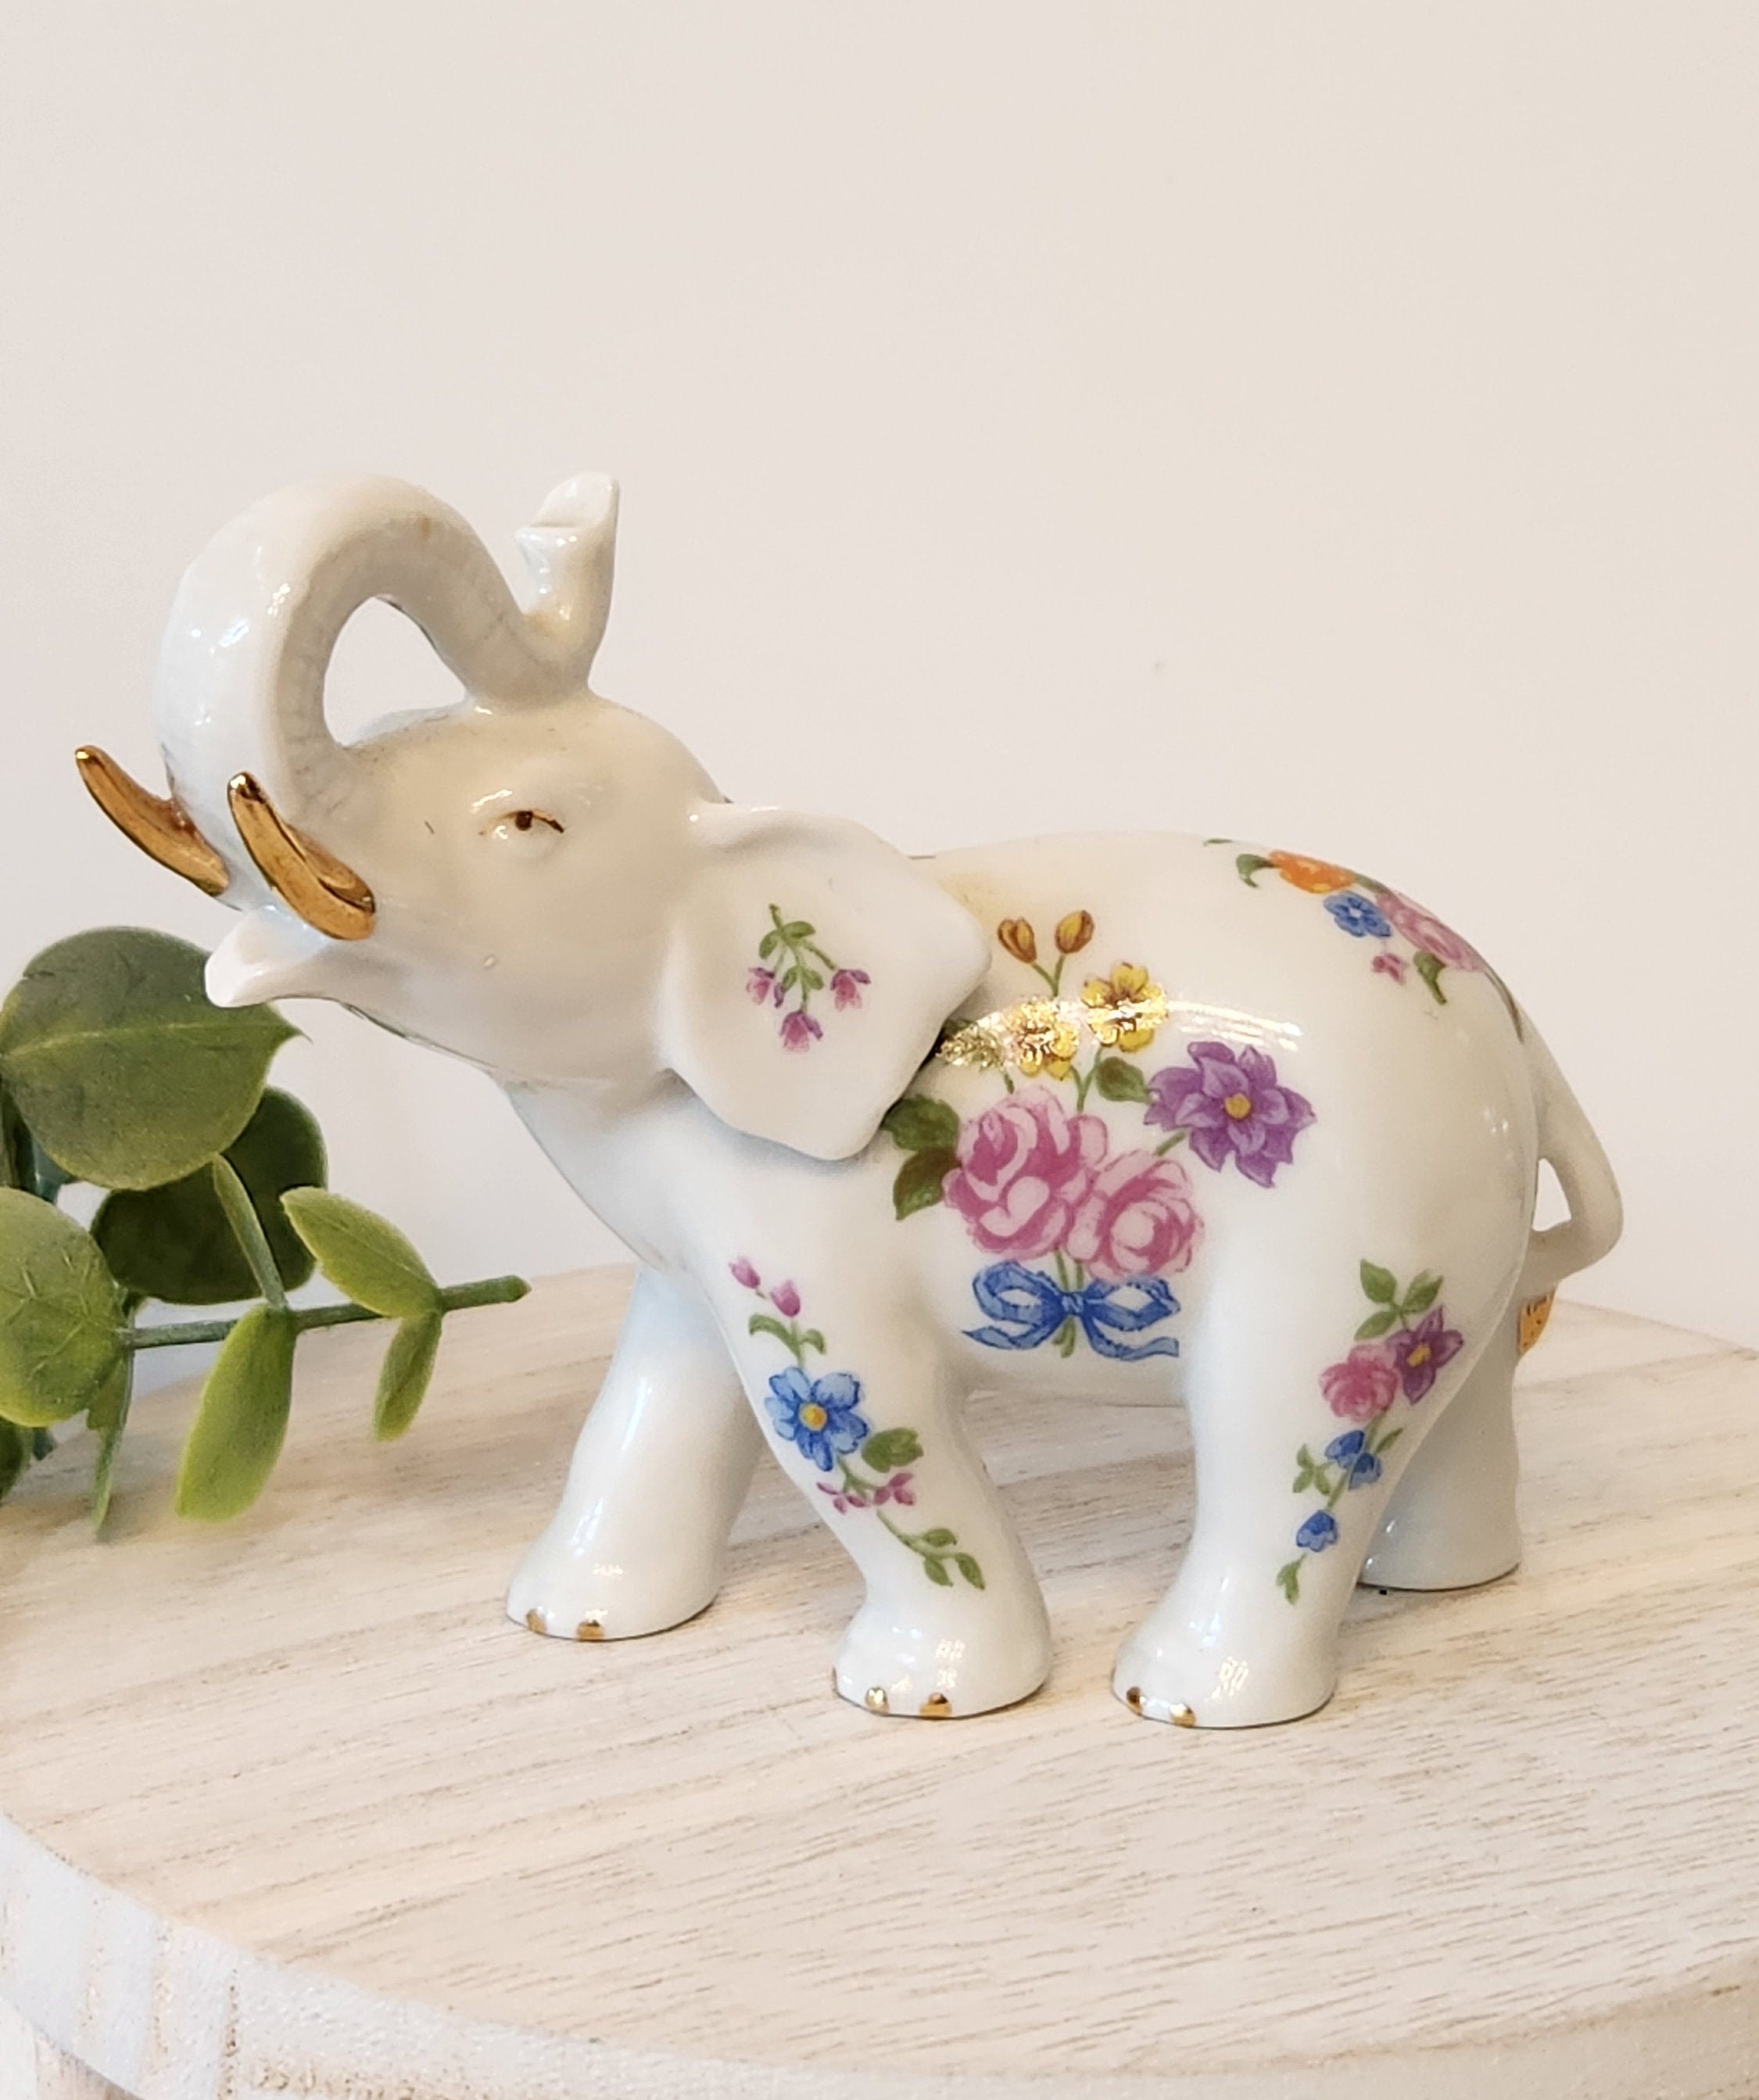 White Elephant Trunk Up Ceramic Figurine 9”L x 6 3/8”H x 4” W